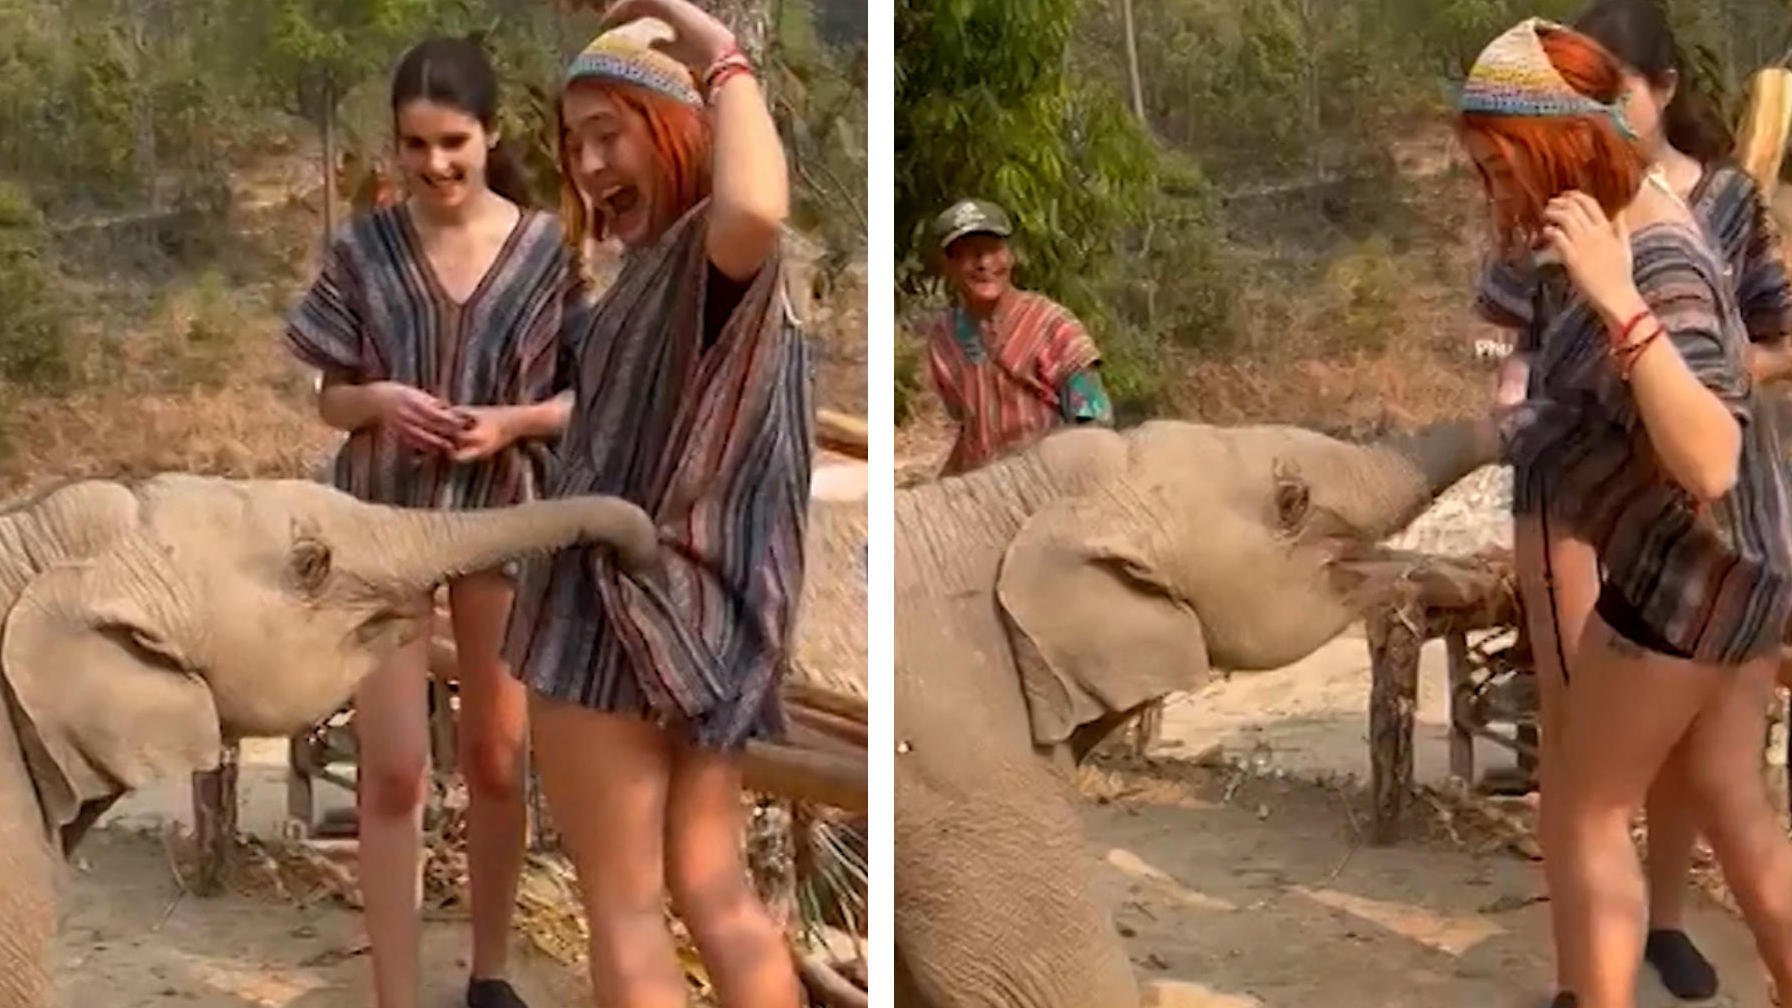 El elefante está tratando de desnudar al turista, ¡su trompa quiere mucho!